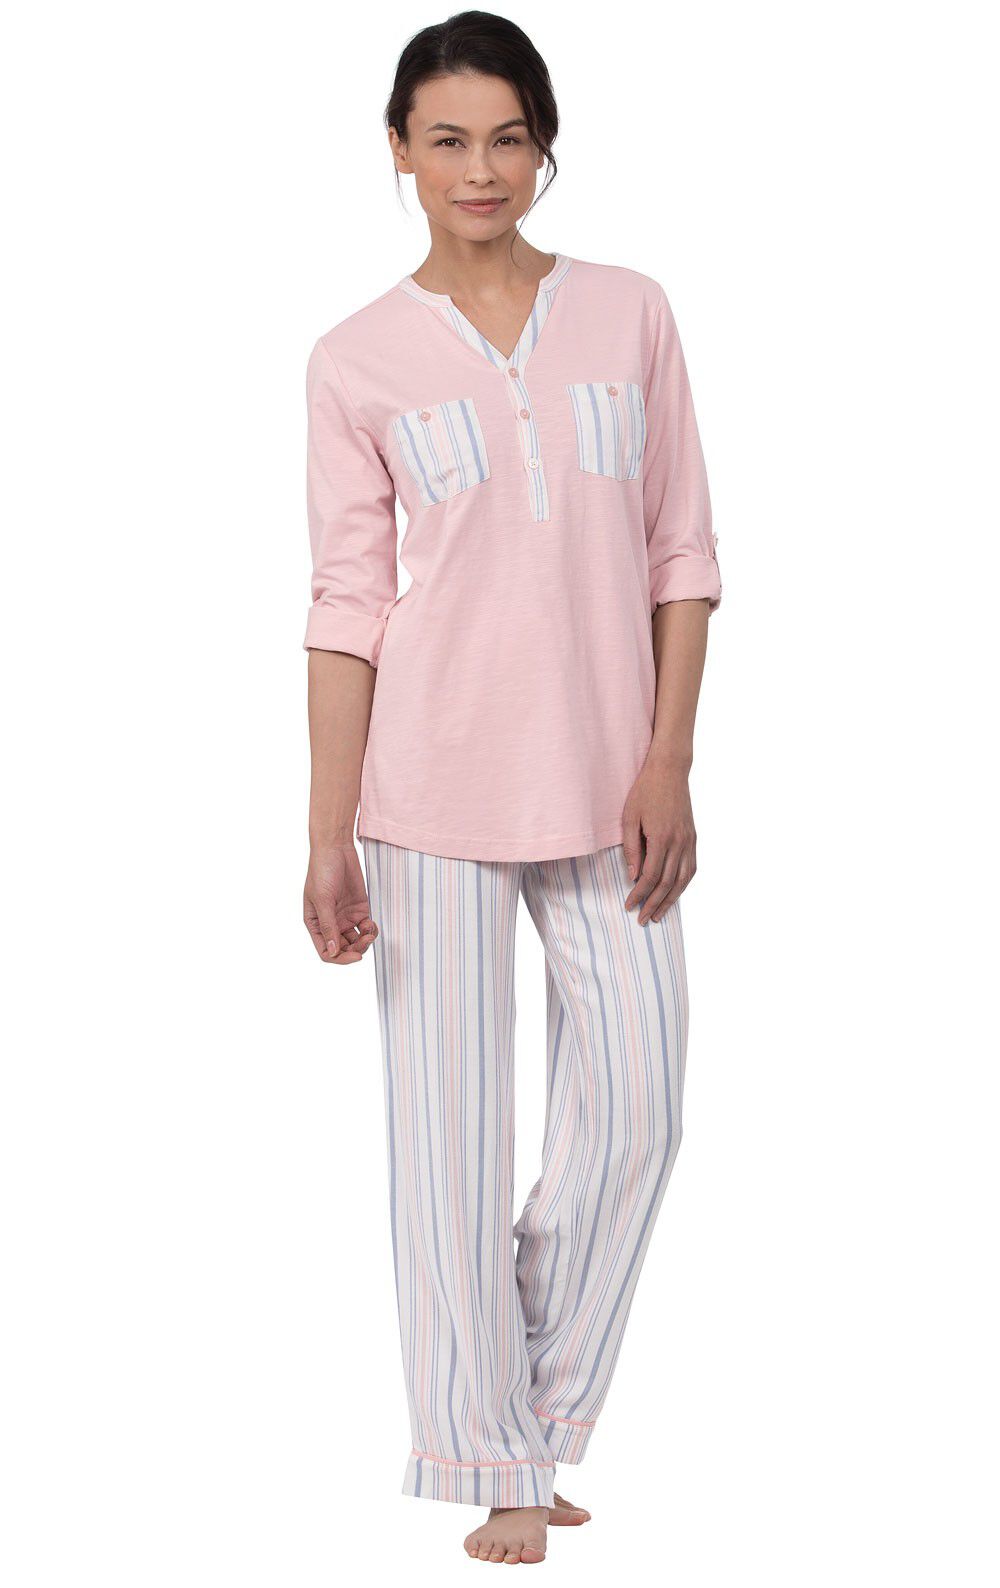 TENGTENGCAI WomenS Long Sleeve Pajamas,Gray Cute Pattern Cartoon Women Pajama Sets Brushed Cotton Autumn Long Sleeve Warm Sleepwear Pyjamas Women Winter Lapel Pajamas